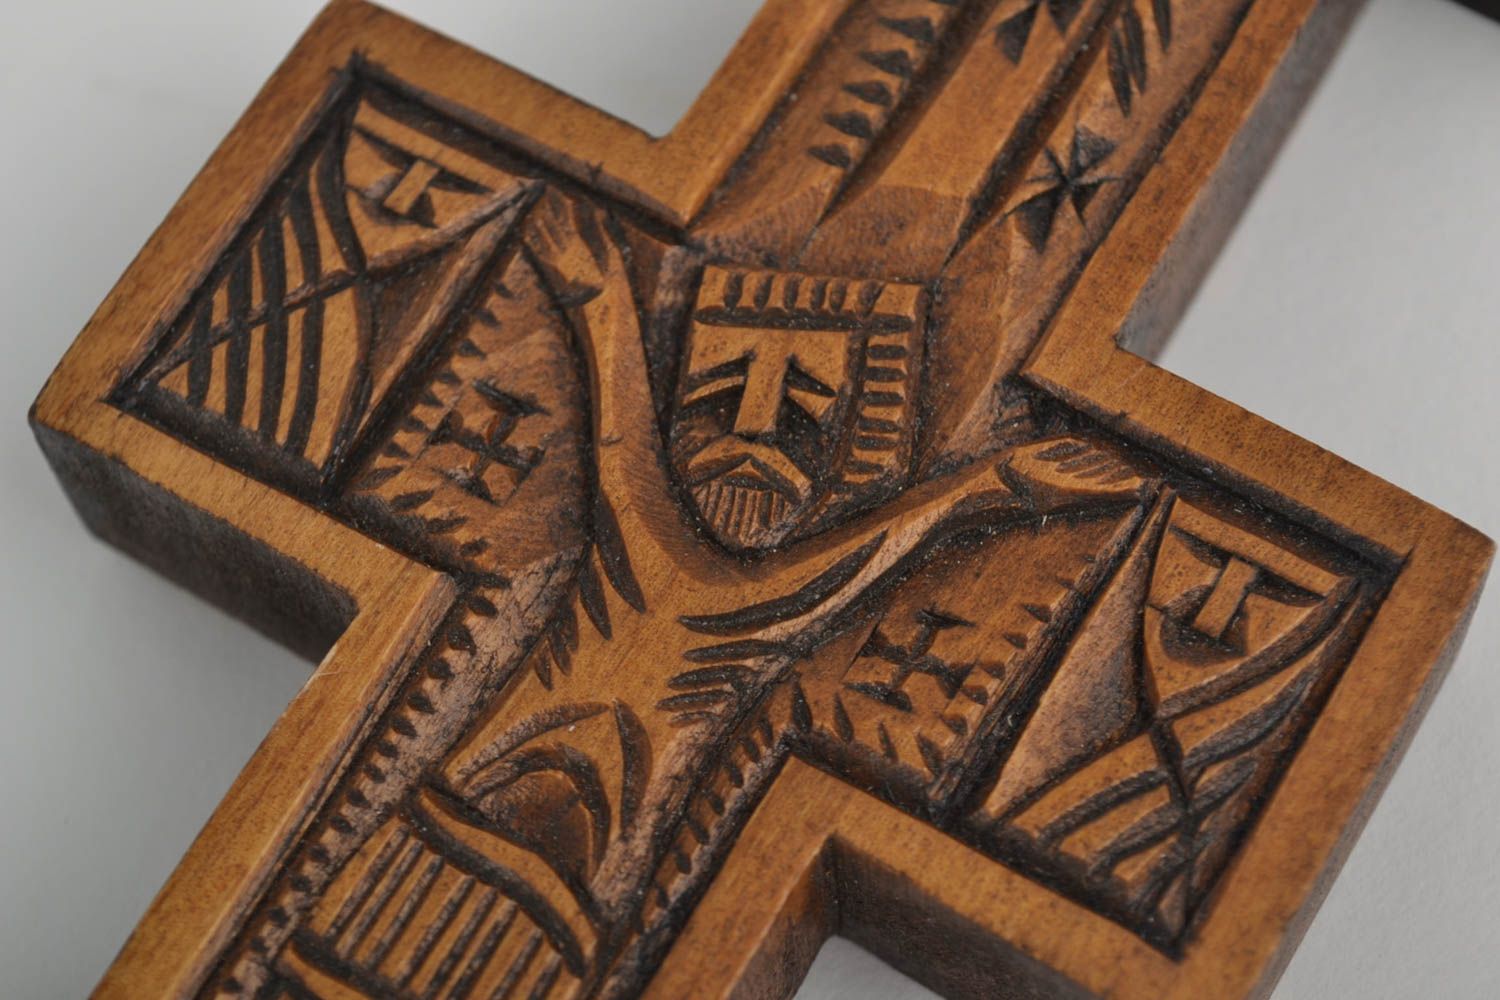 Крест ручной работы резной крест из дерева украшение на стену изделие из дерева фото 2